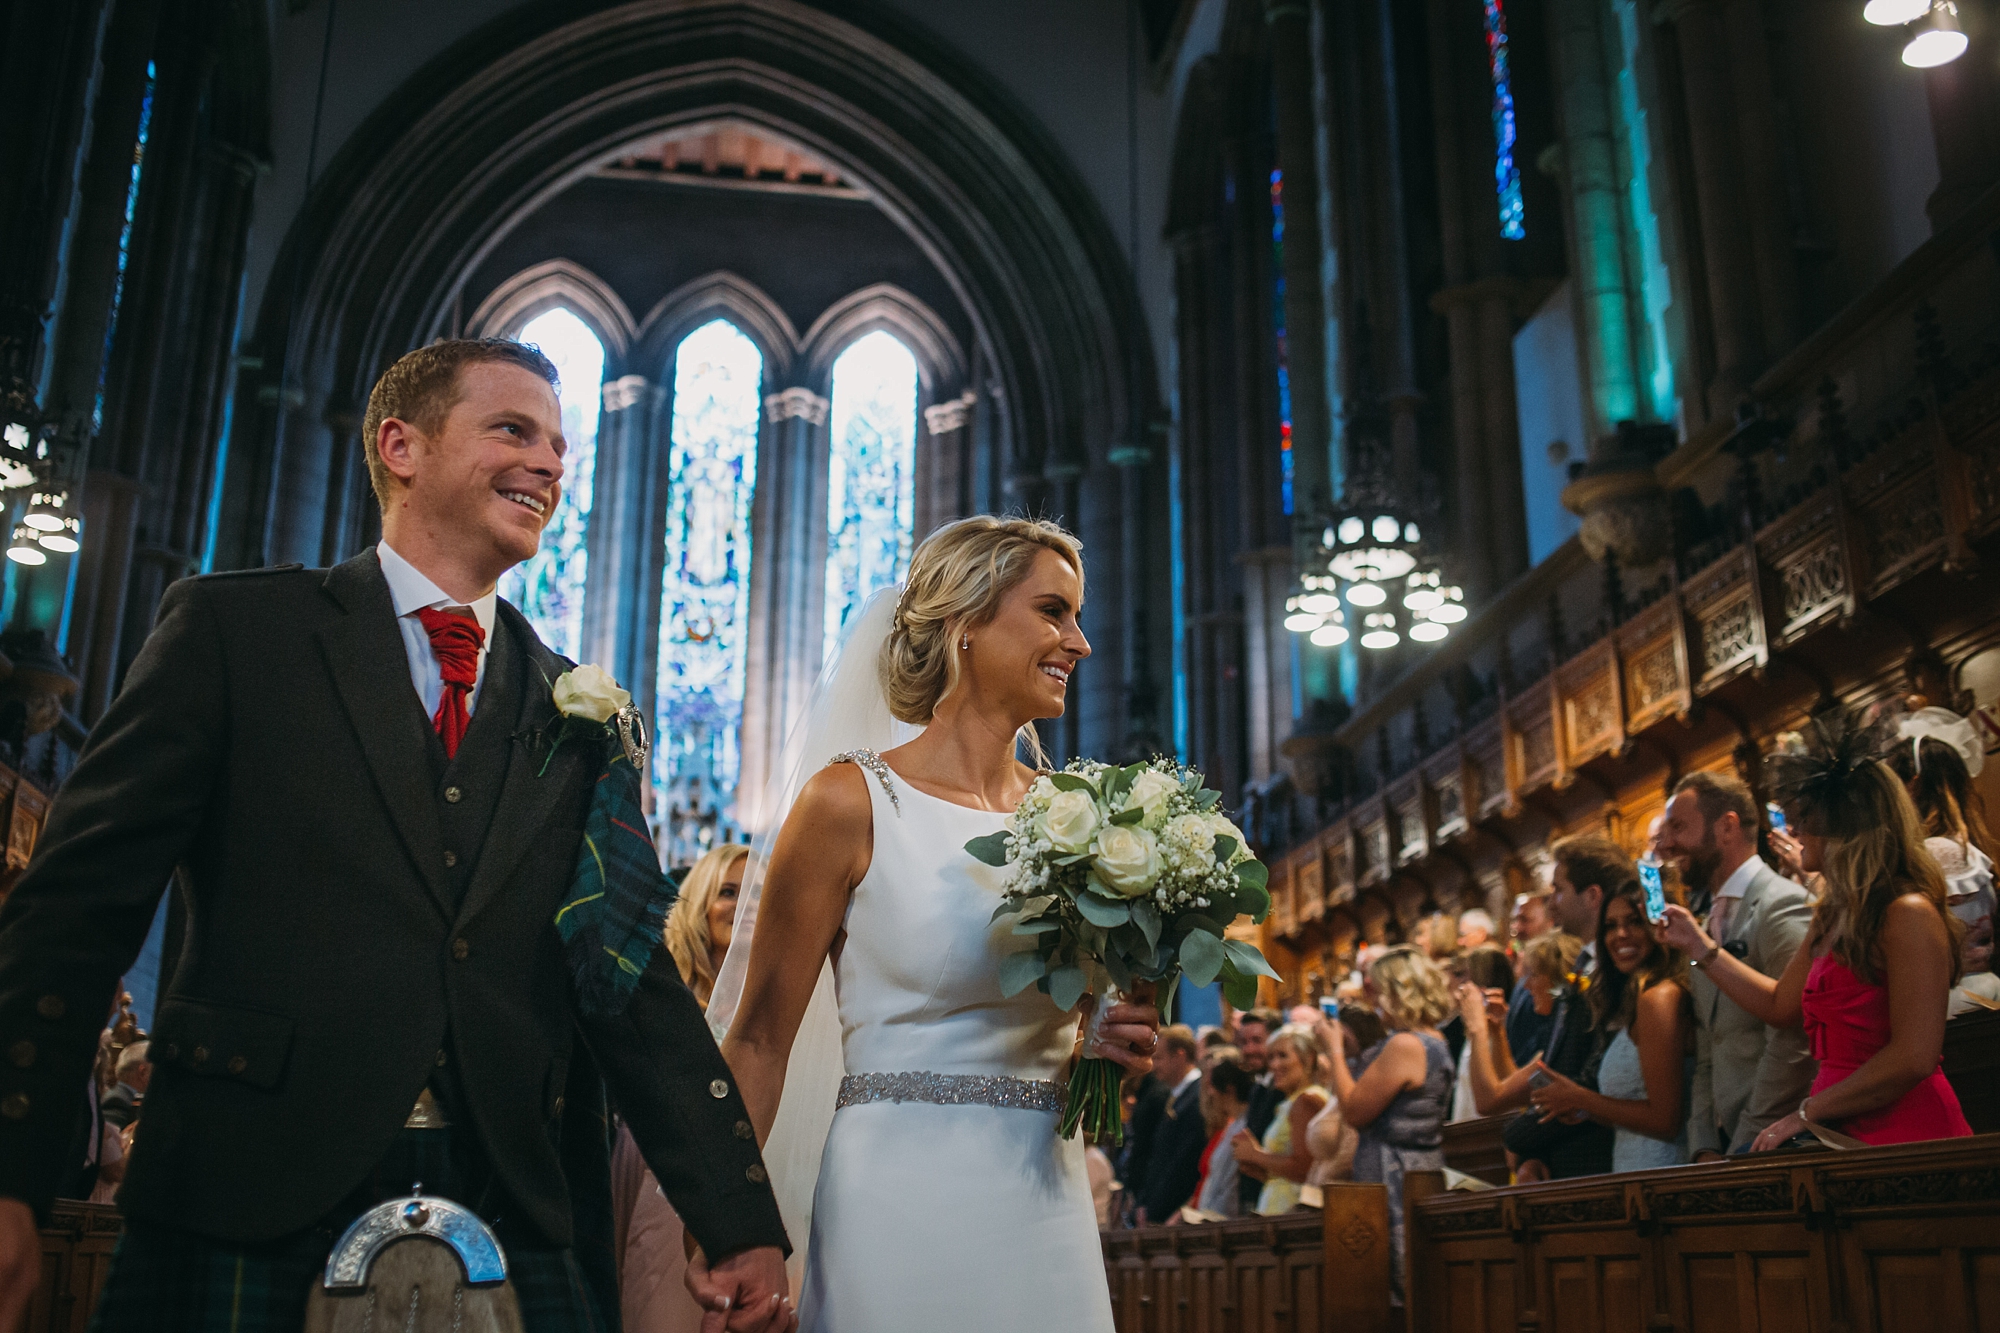 Newlyweds leave Glasgow University Chapel - best wedding photographs